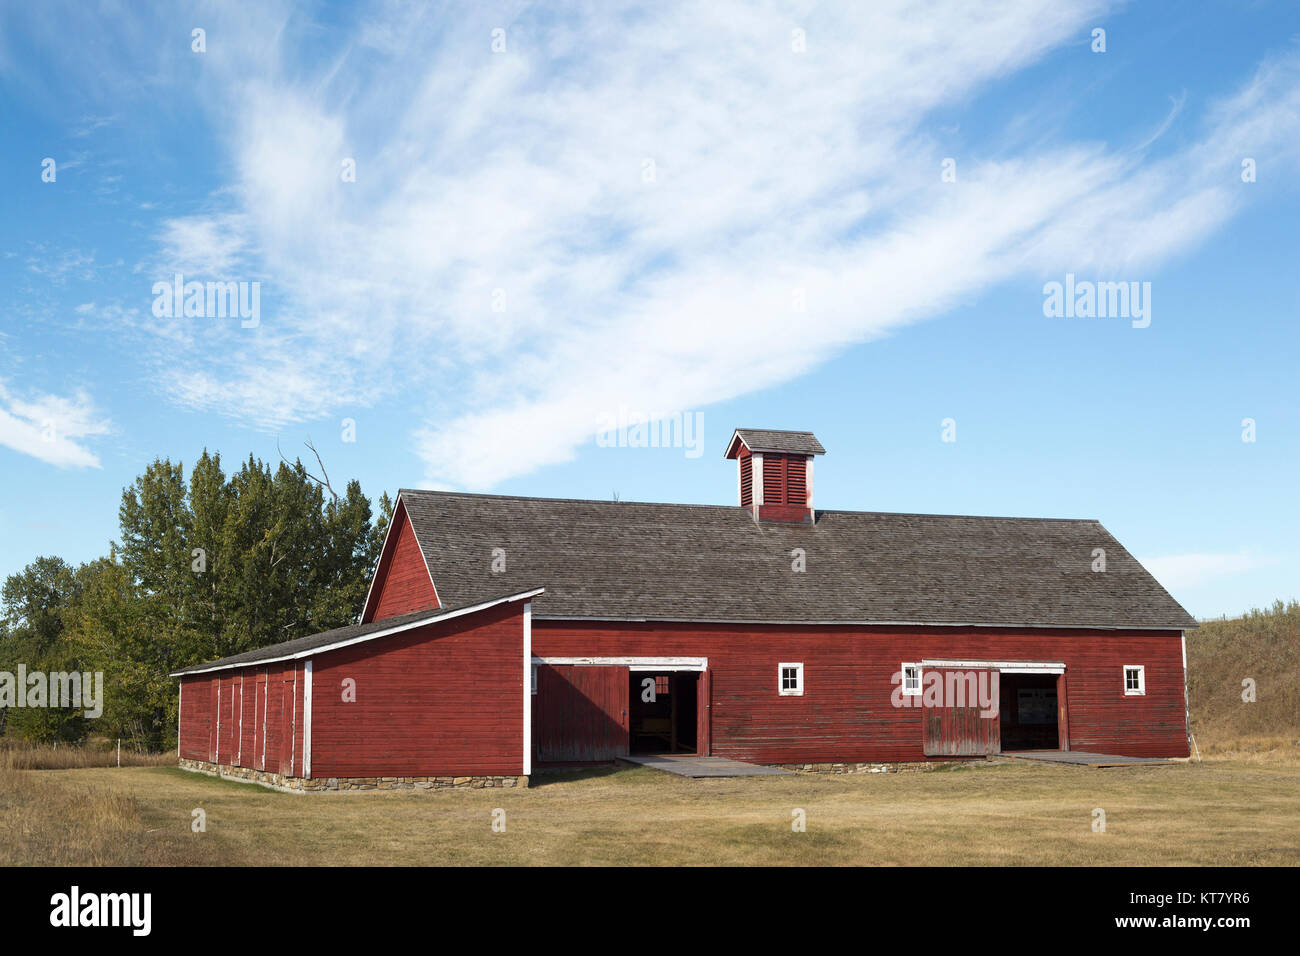 De 1909 à 1919, la grange à chevaux-tiges du lieu historique national du Ranch-Bar U, dans l'ouest du Canada, a été utilisée pour une opération de reproduction de chevaux Percheron. Banque D'Images